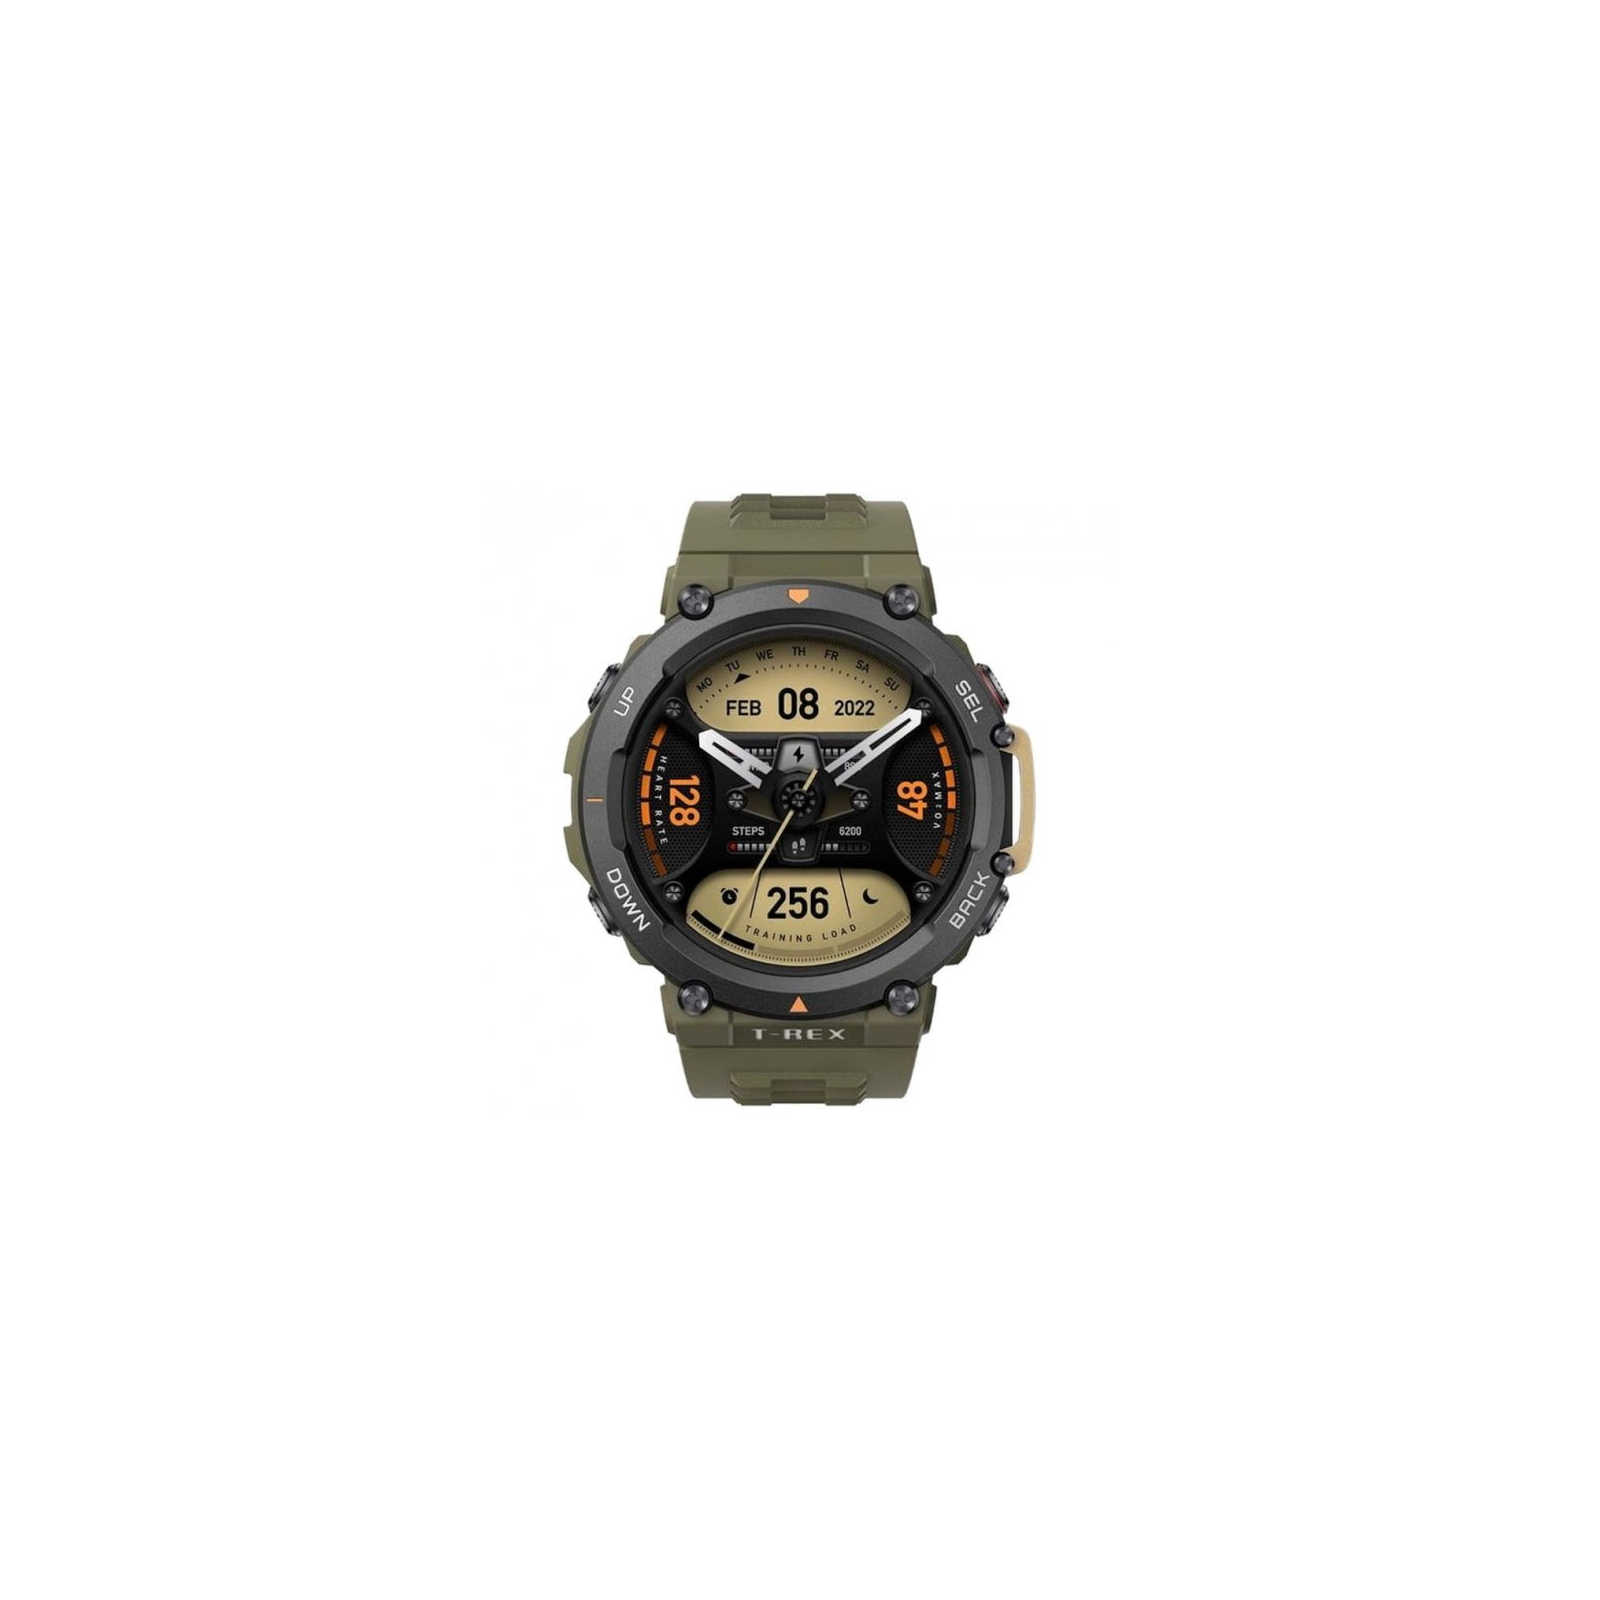 Смарт-часы Amazfit T-REX 2 Ember Black (955551) изображение 2